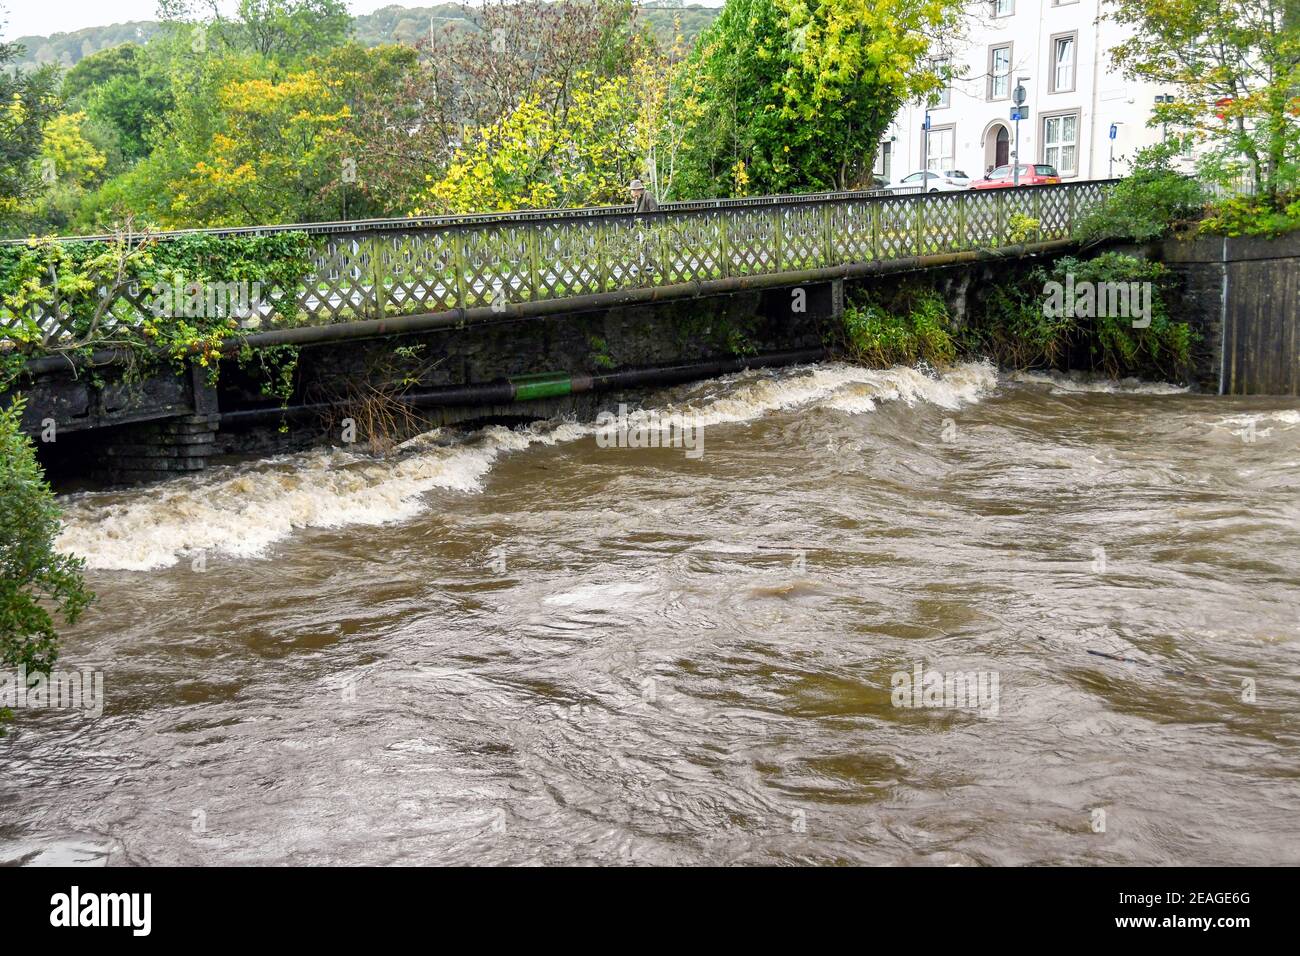 TREFOREST, PONTYPRIDD, PAYS DE GALLES - OCTOBRE 2018 : l'eau de la rivière lutte pour s'écouler sous un pont sur la rivière Taff à Treforest, au sud du pays de Galles, après une tempête. Banque D'Images